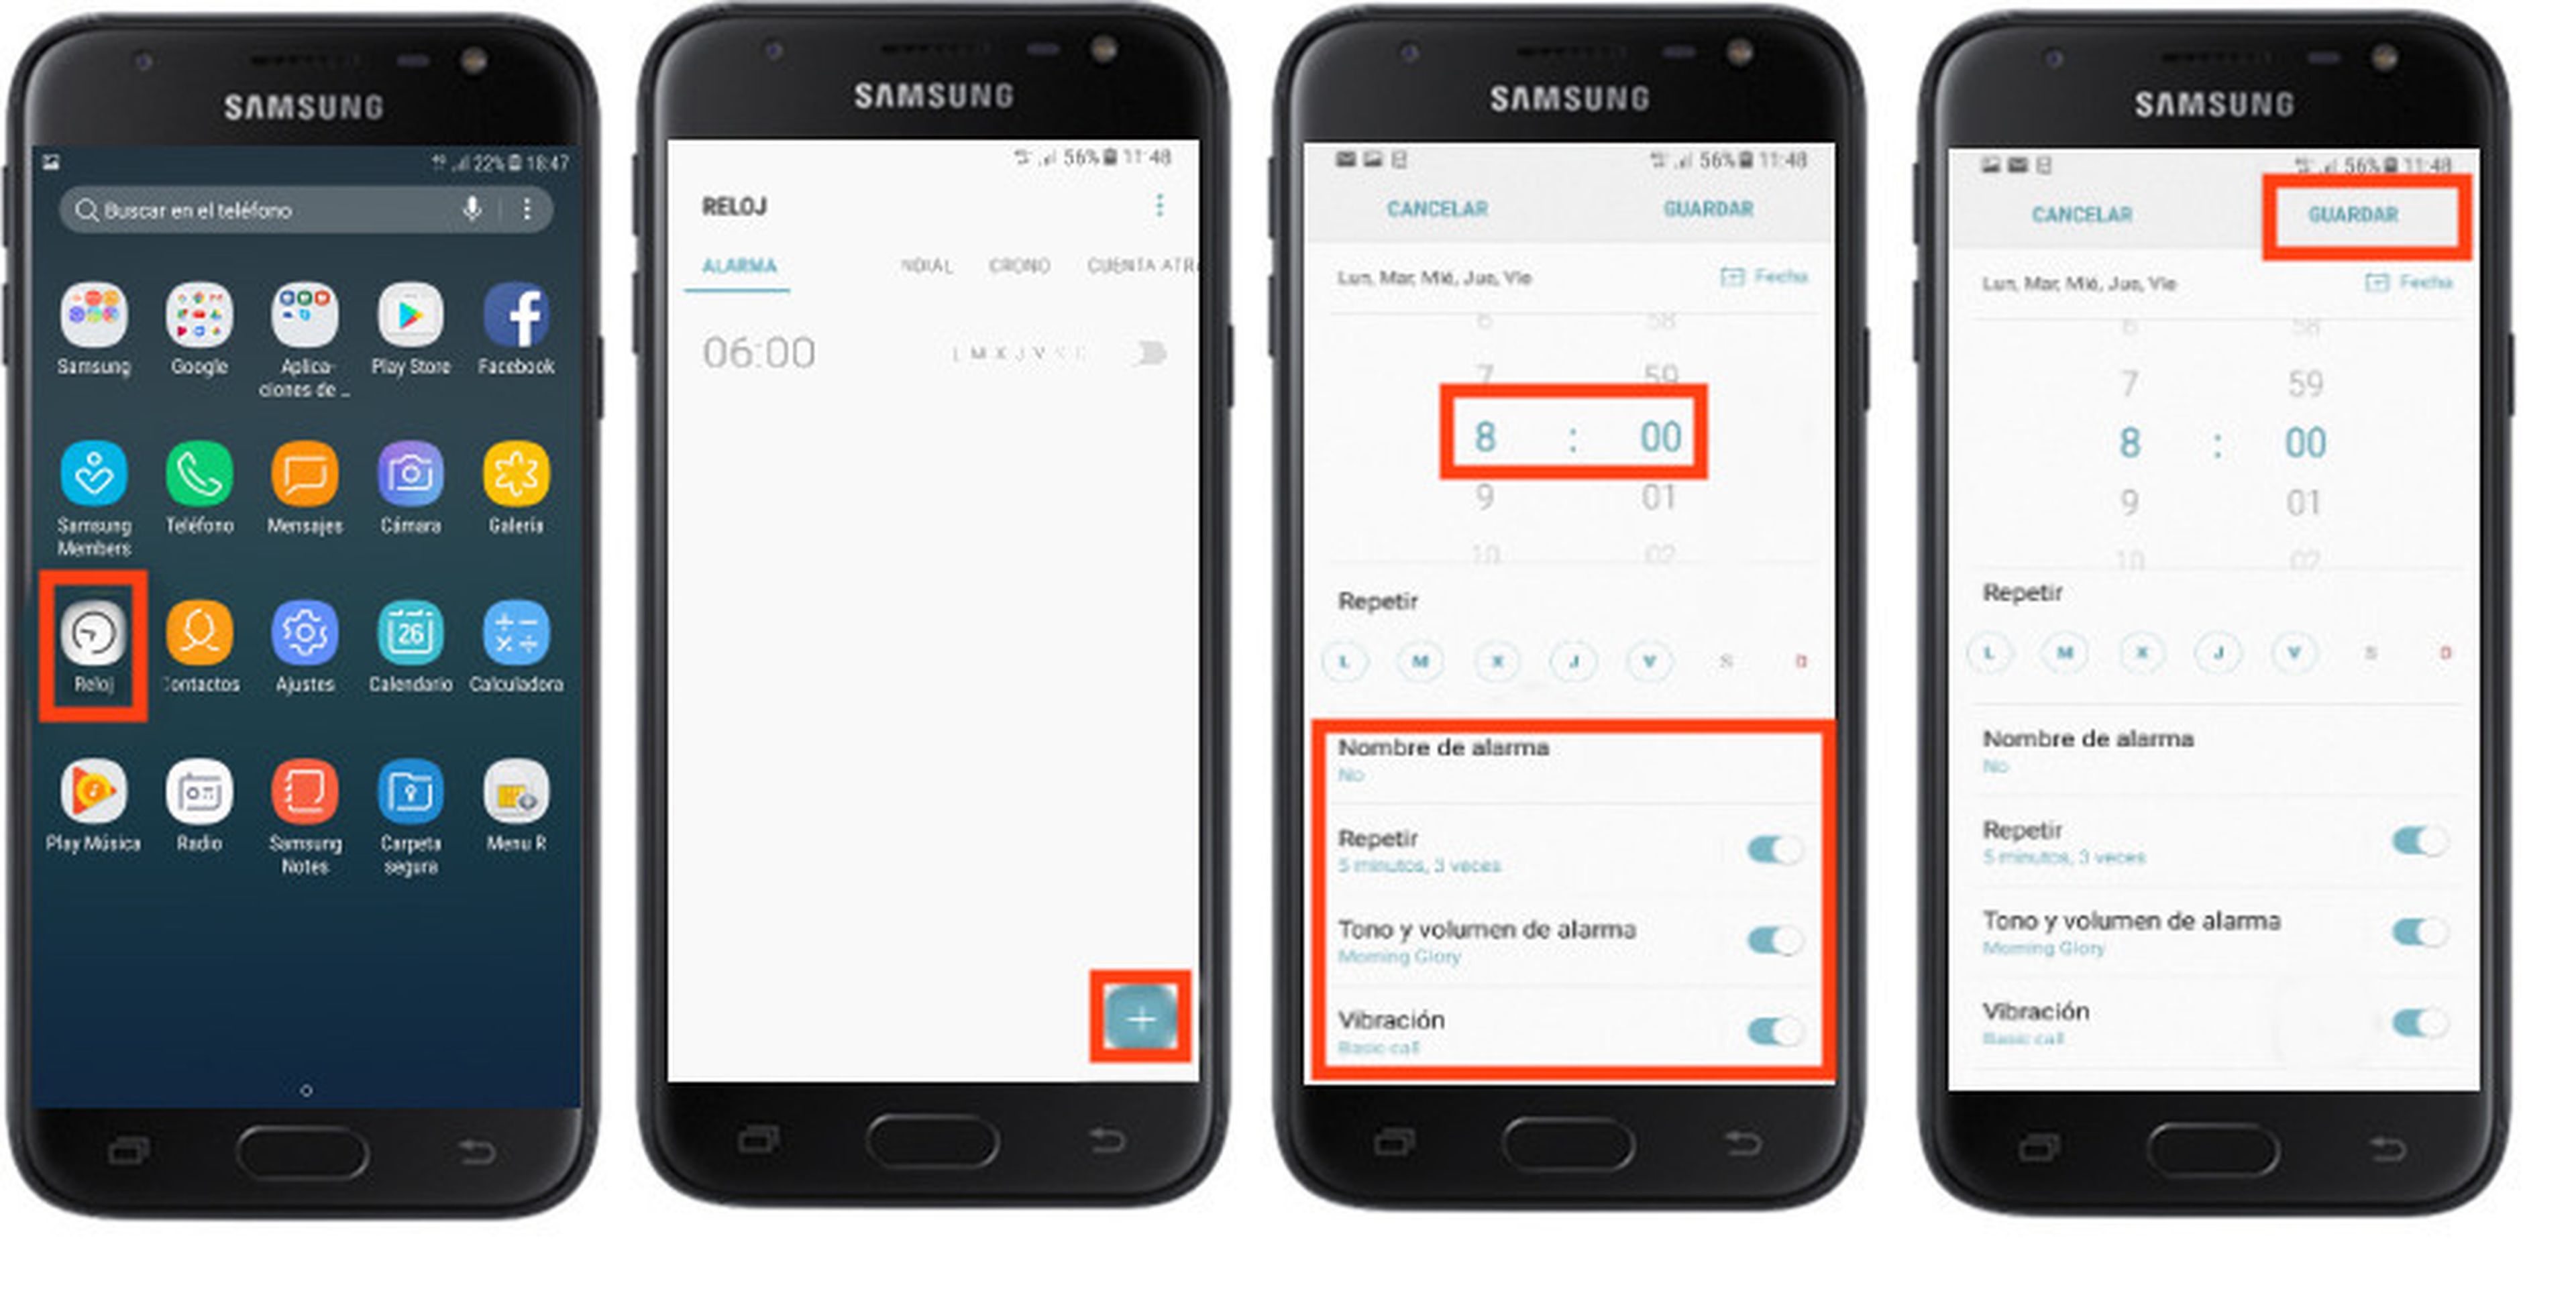 Galaxy J7 2017: Configurar alarmas